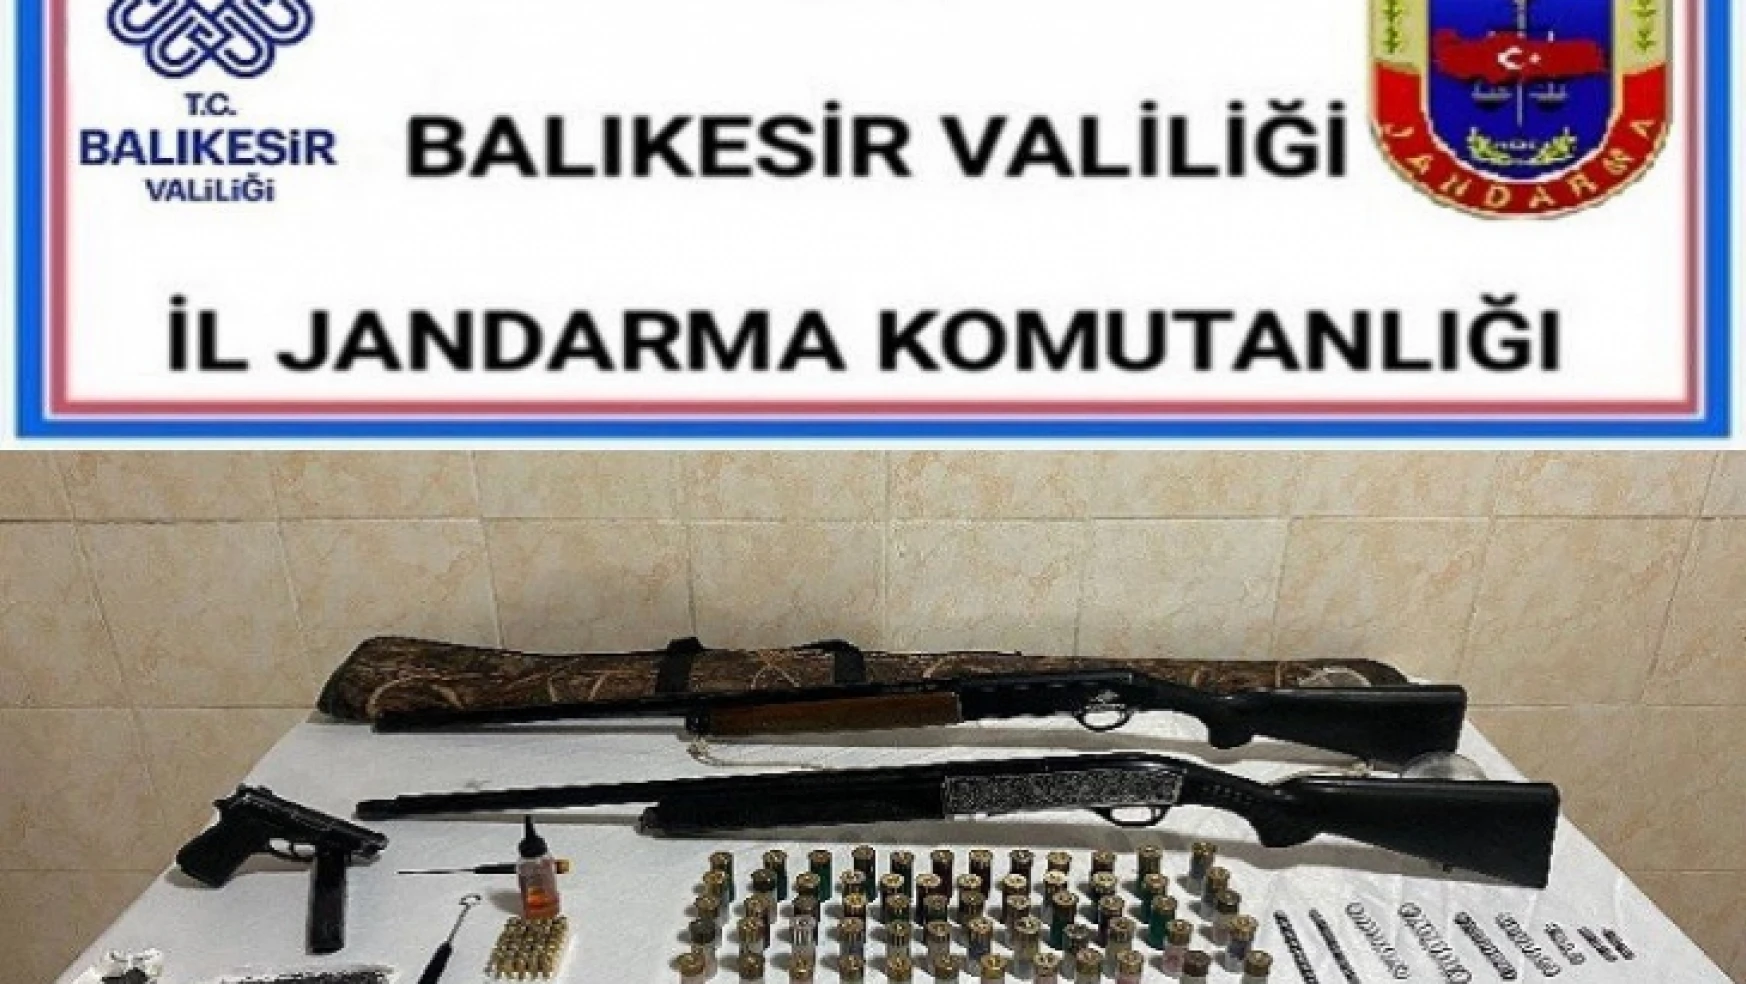 Balıkesir'de polis ve jandarmadan 66 şüpheliye gözaltı